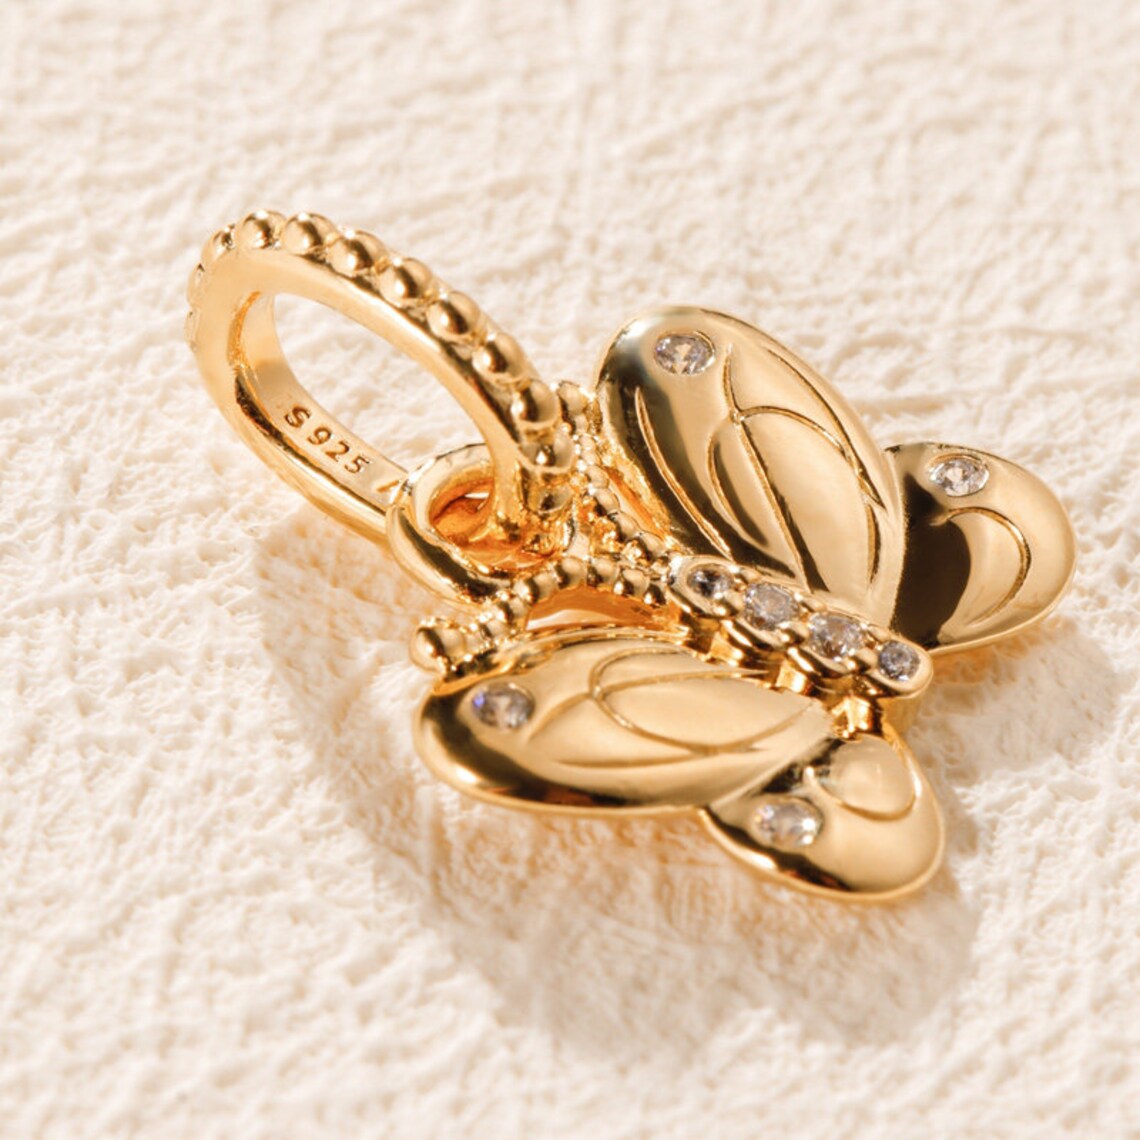 14 كيلو أصفر الذهب الذهبي المعدني مطلي الفراشة حبة السحر تناسب أساور سحر المجوهرات الأوروبية باندورا